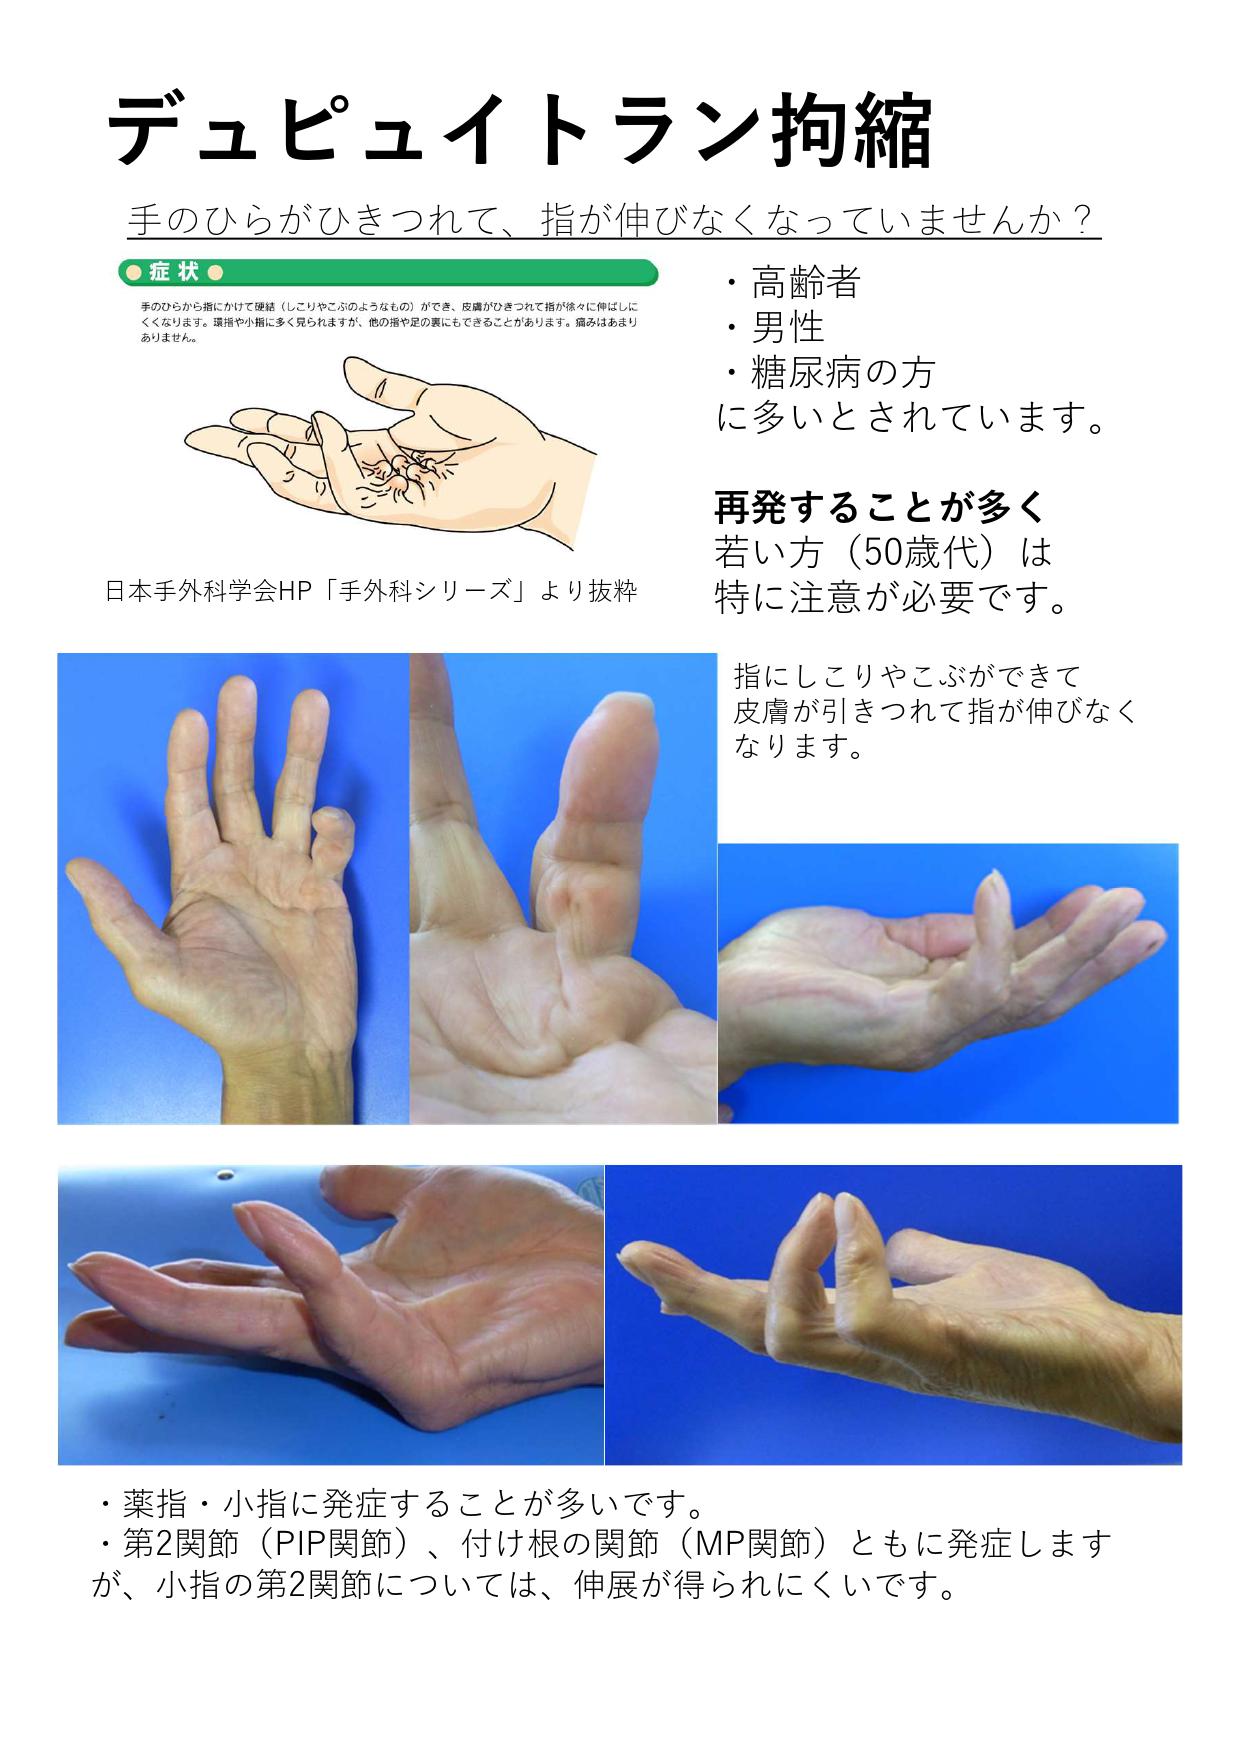 頻度の多い手の外科疾患 - 手根管症候群など手の病気を治療する 茨城県 